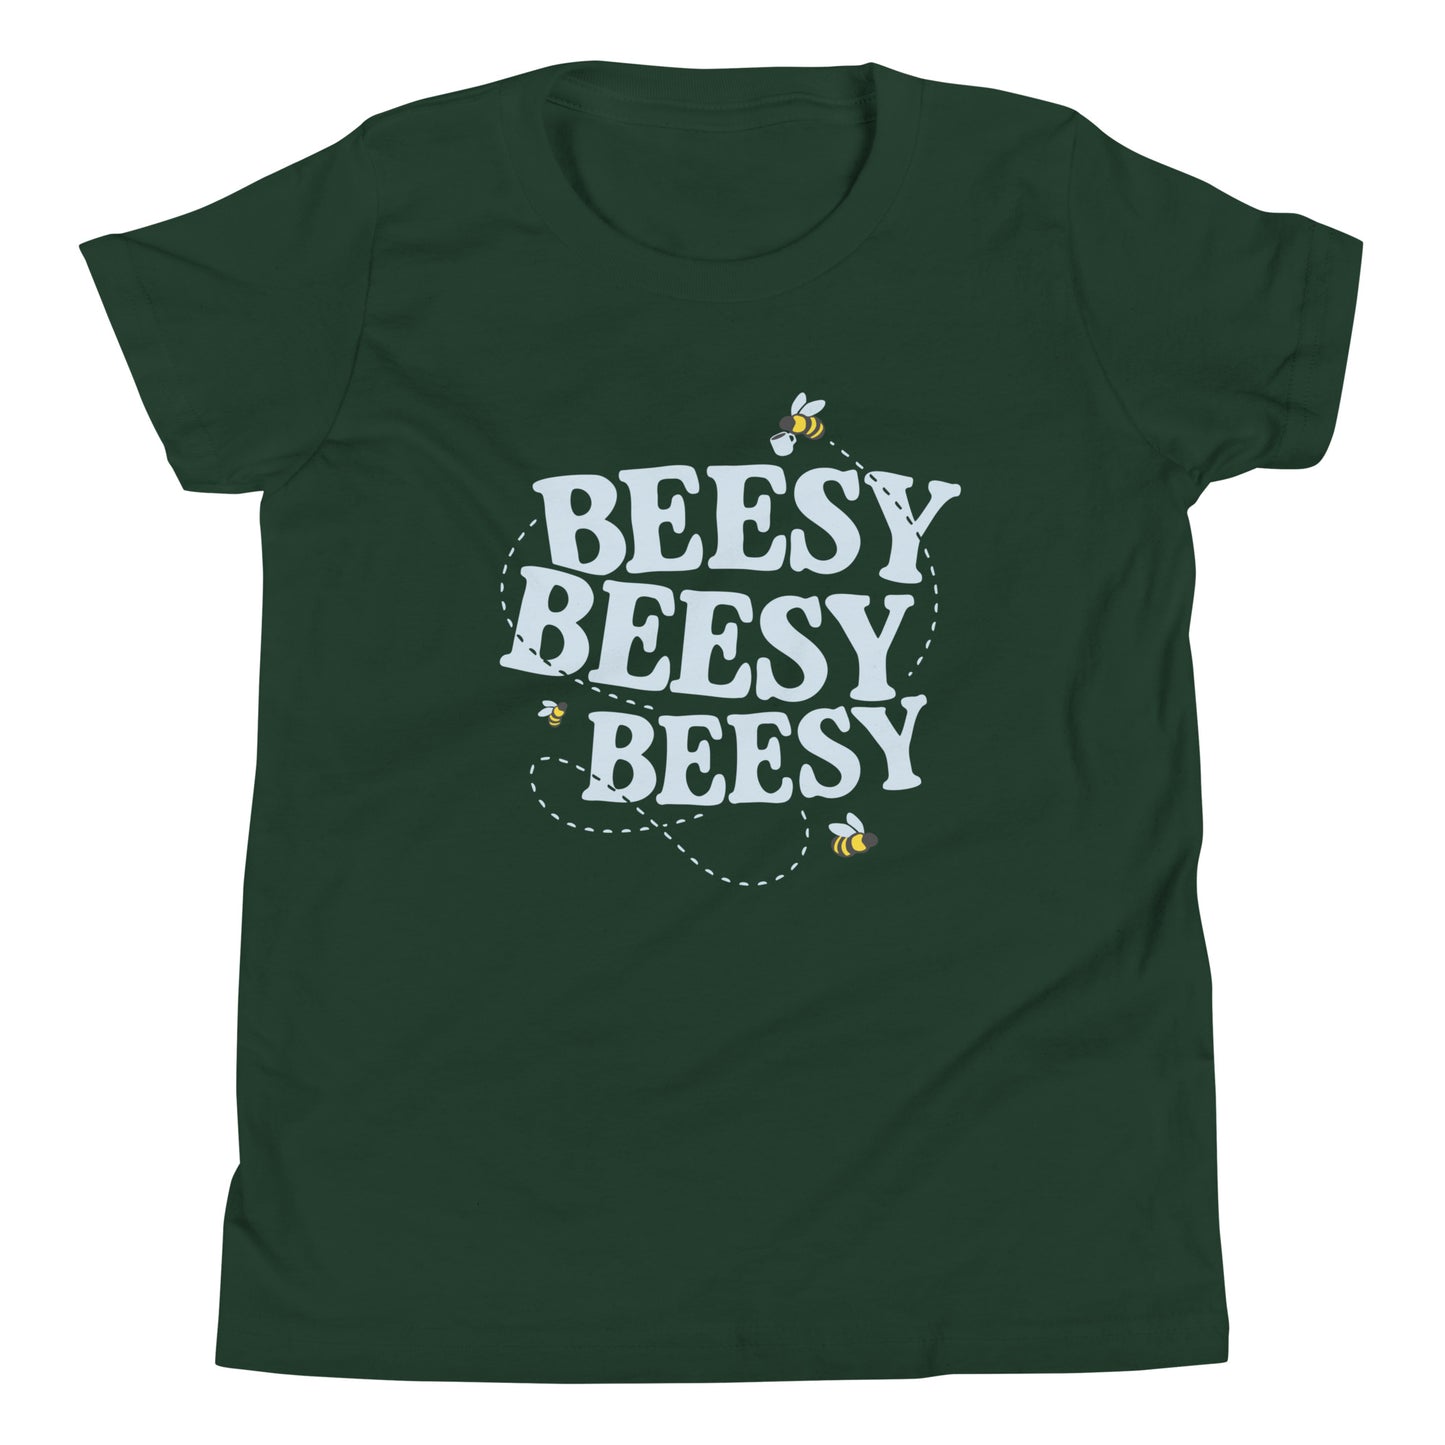 Beesy Beesy Beesy Kid's Youth Tee